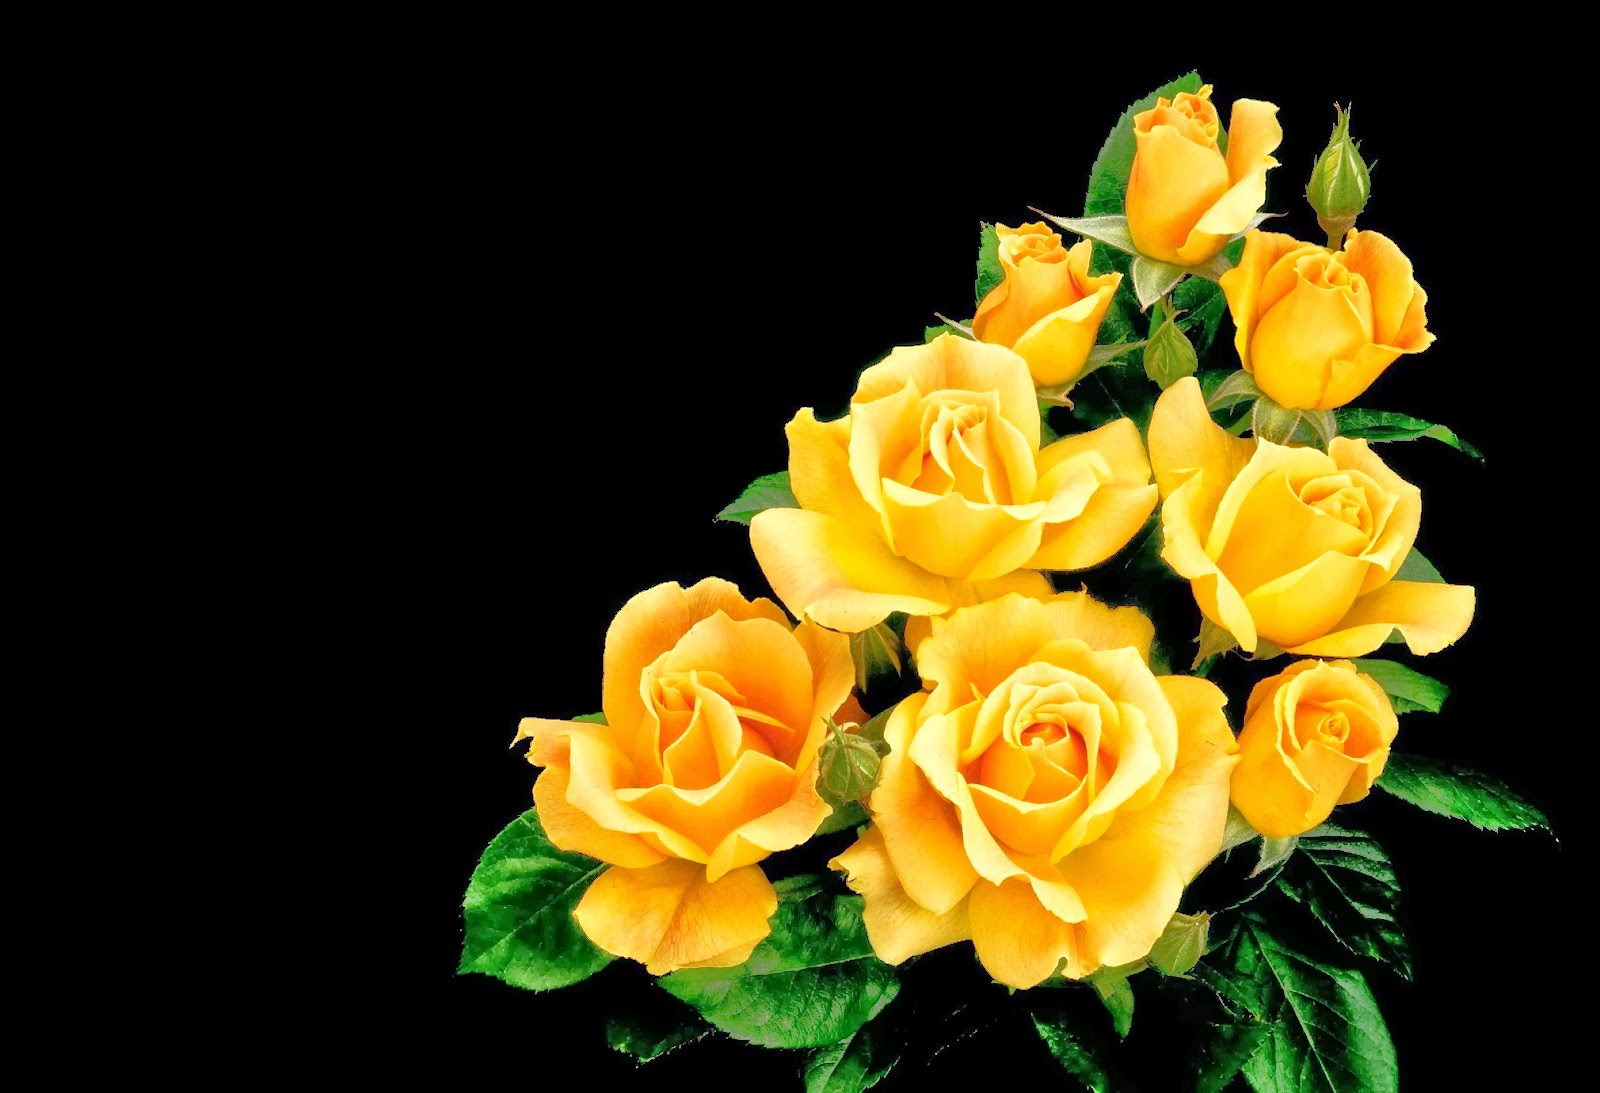 Download All 4u HD Wallpaper Free Download : Beautiful Yellow Rose Wallpapers Free Download